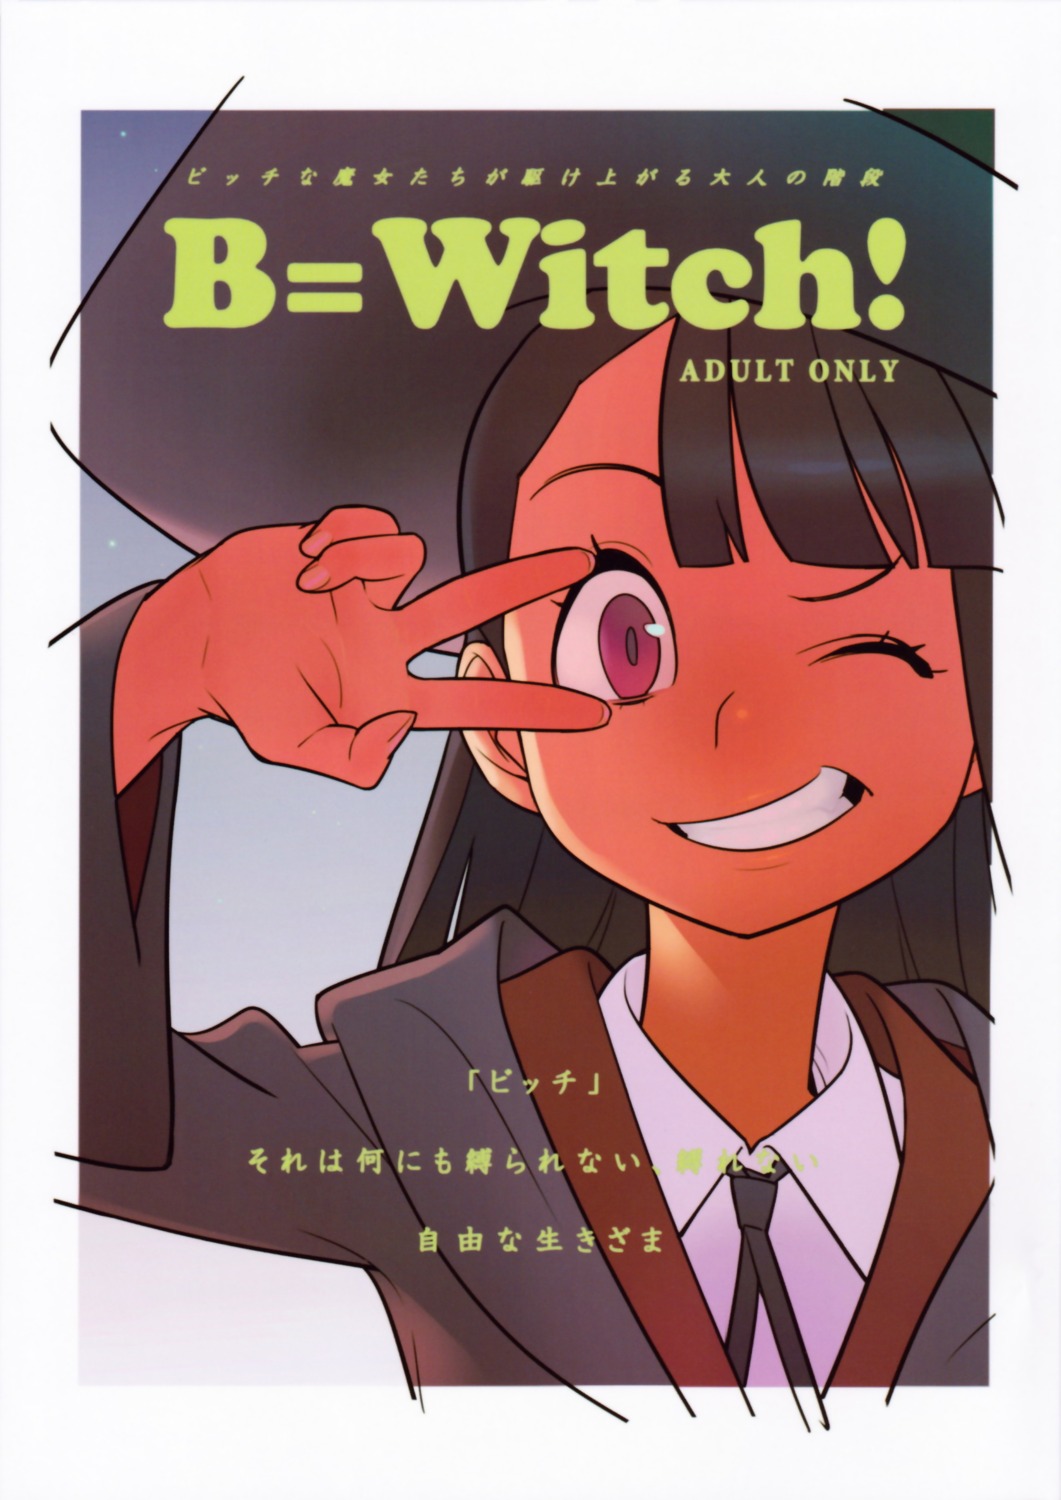 atsuko_kagari hamanasu hamanasu_chaya little_witch_academia witch